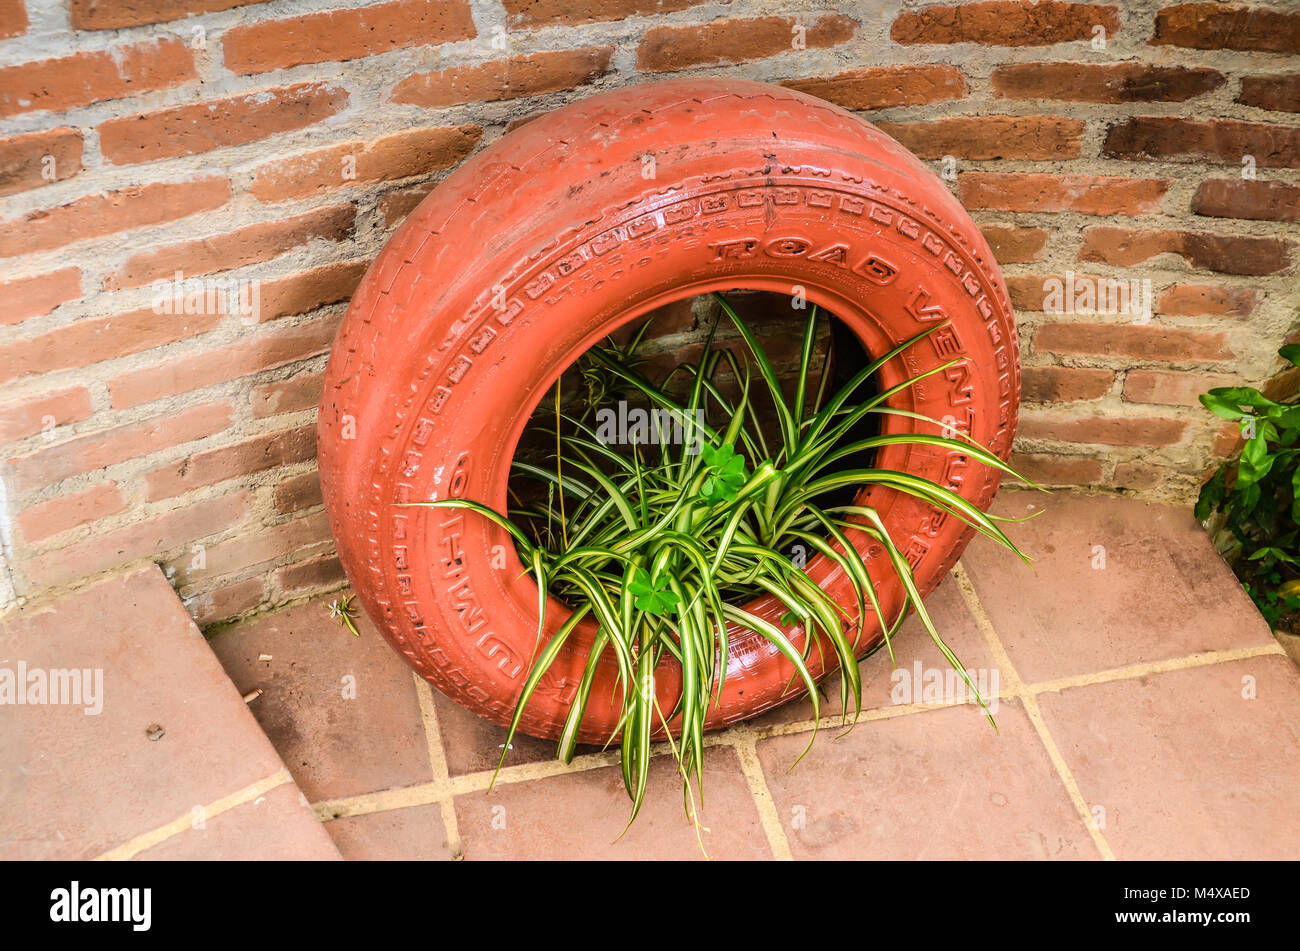 Pneu recyclé en jardin, peint en orange avec plante araignée. Situé contre le mur de briques rouges en terre cuite et carrelage. Banque D'Images